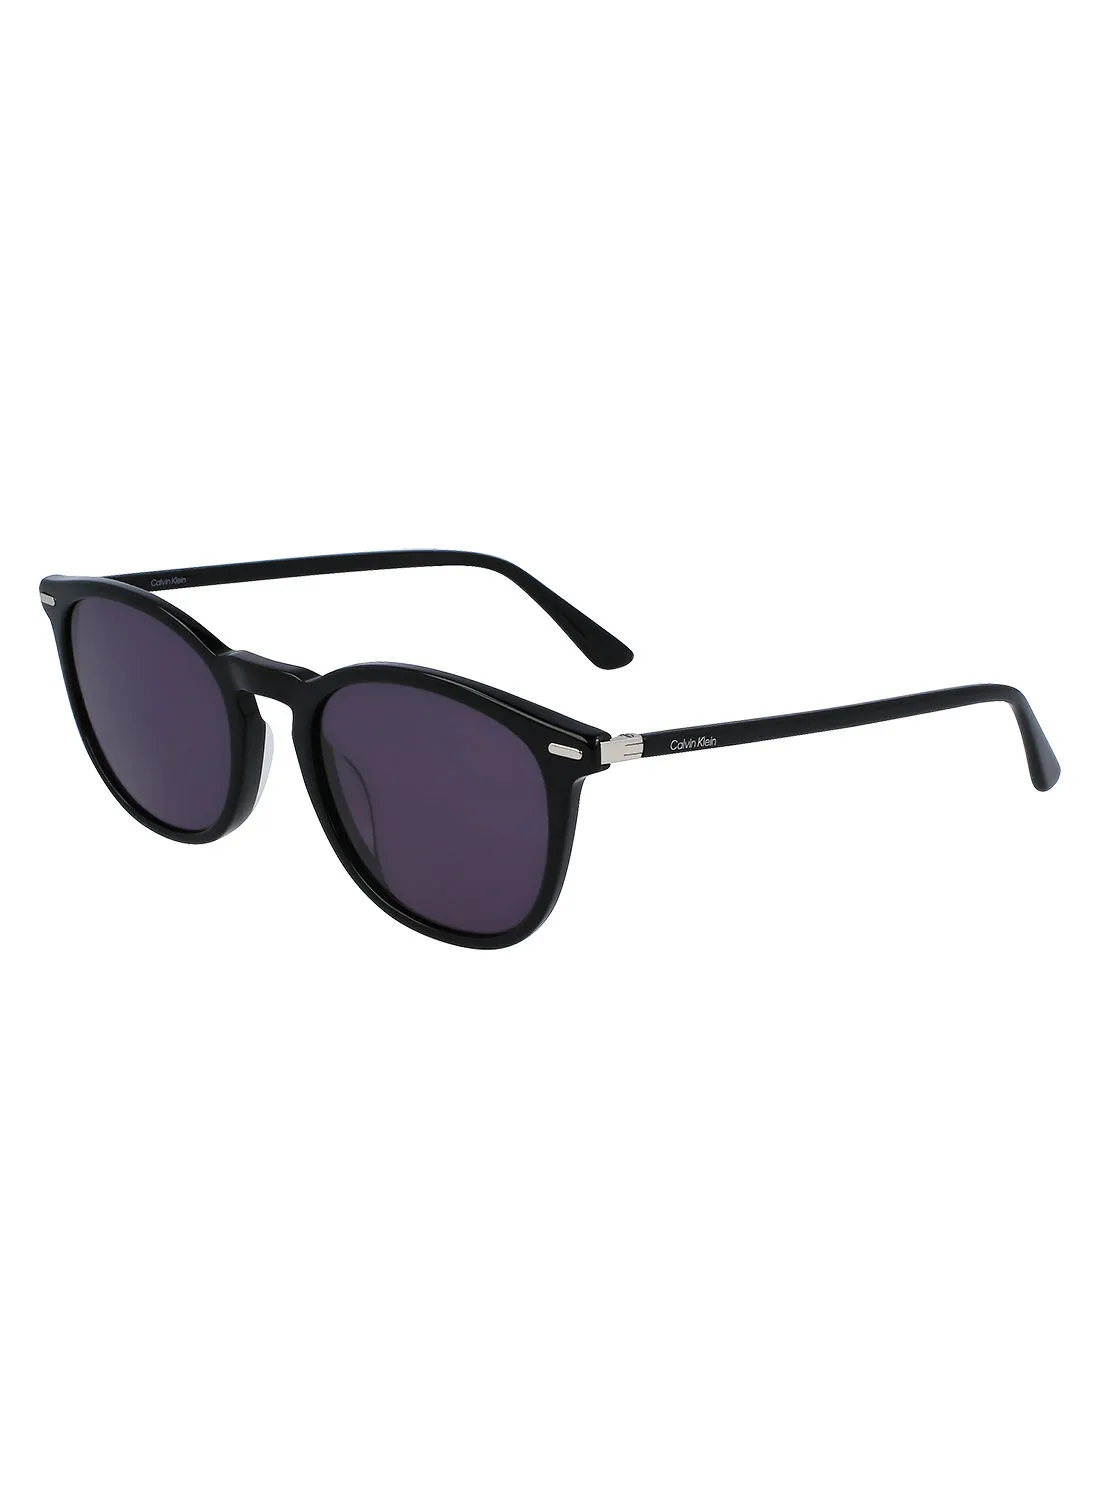 CALVIN KLEIN Full Rim Acetate P-3 Sunglasses Ck22533S 5221 001 Black